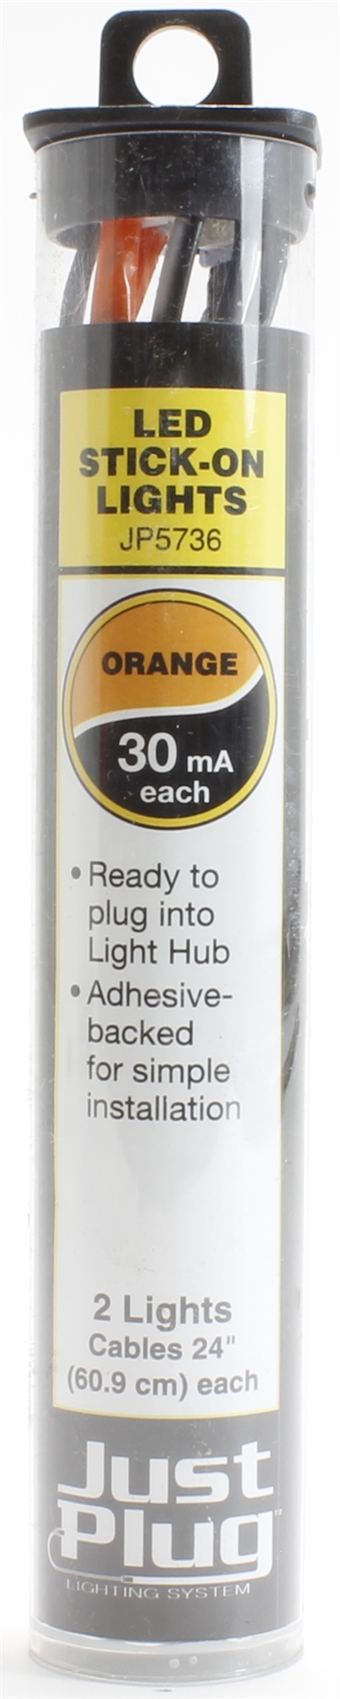 Orange LED stick-on lights for Just Plug lighting system